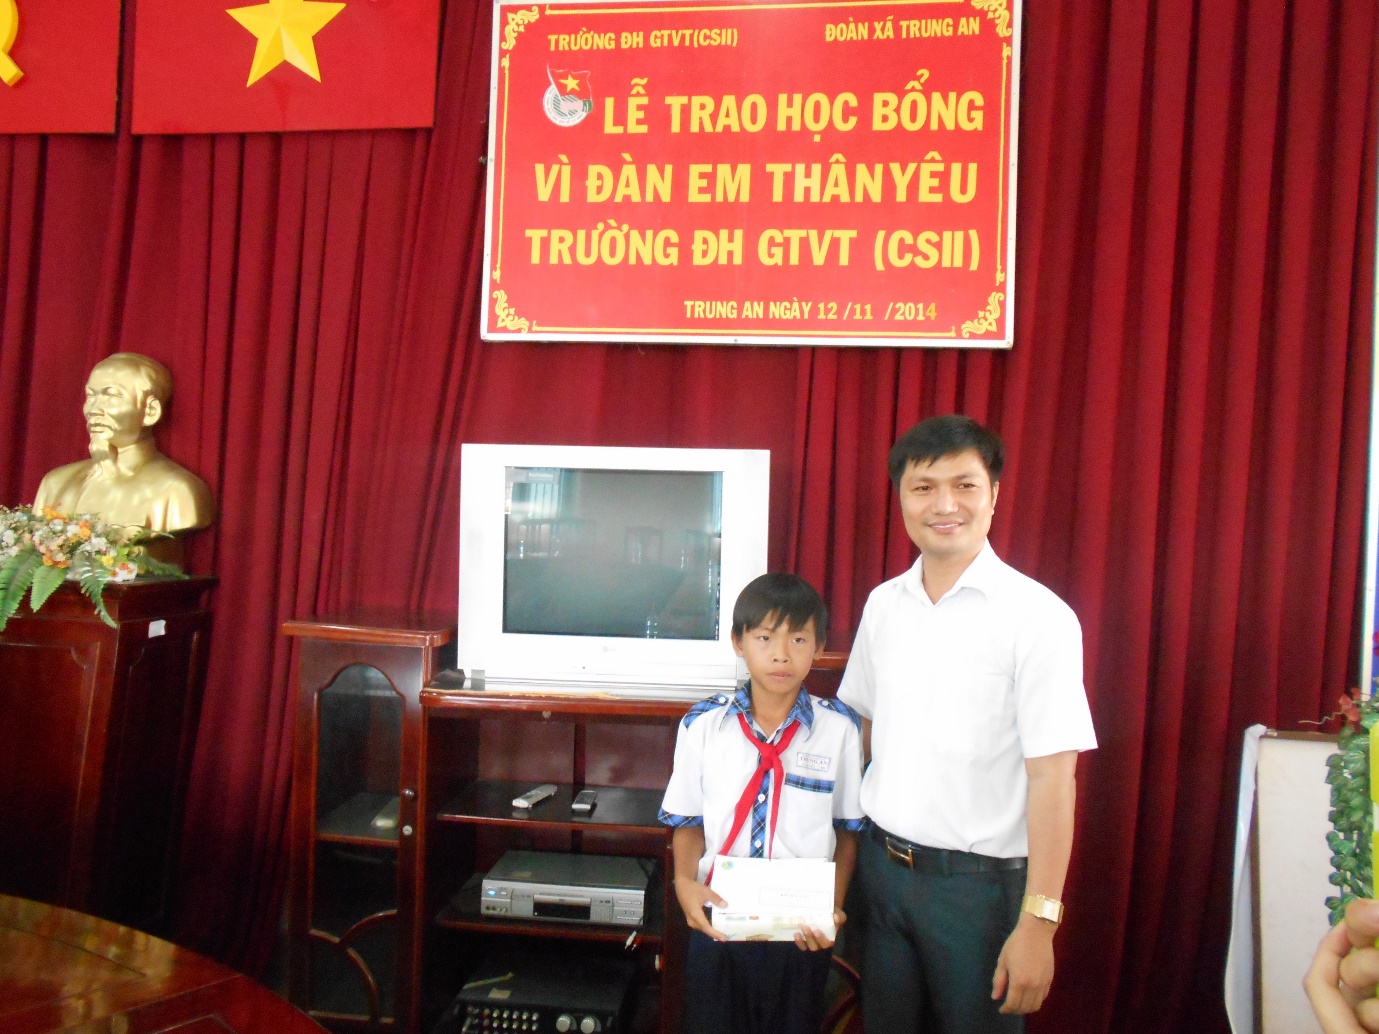 Đại học GTVT Cơ sở 2 trao học bổng cho học sinh nghèo tại huyện Củ Chi - Tp. HCM